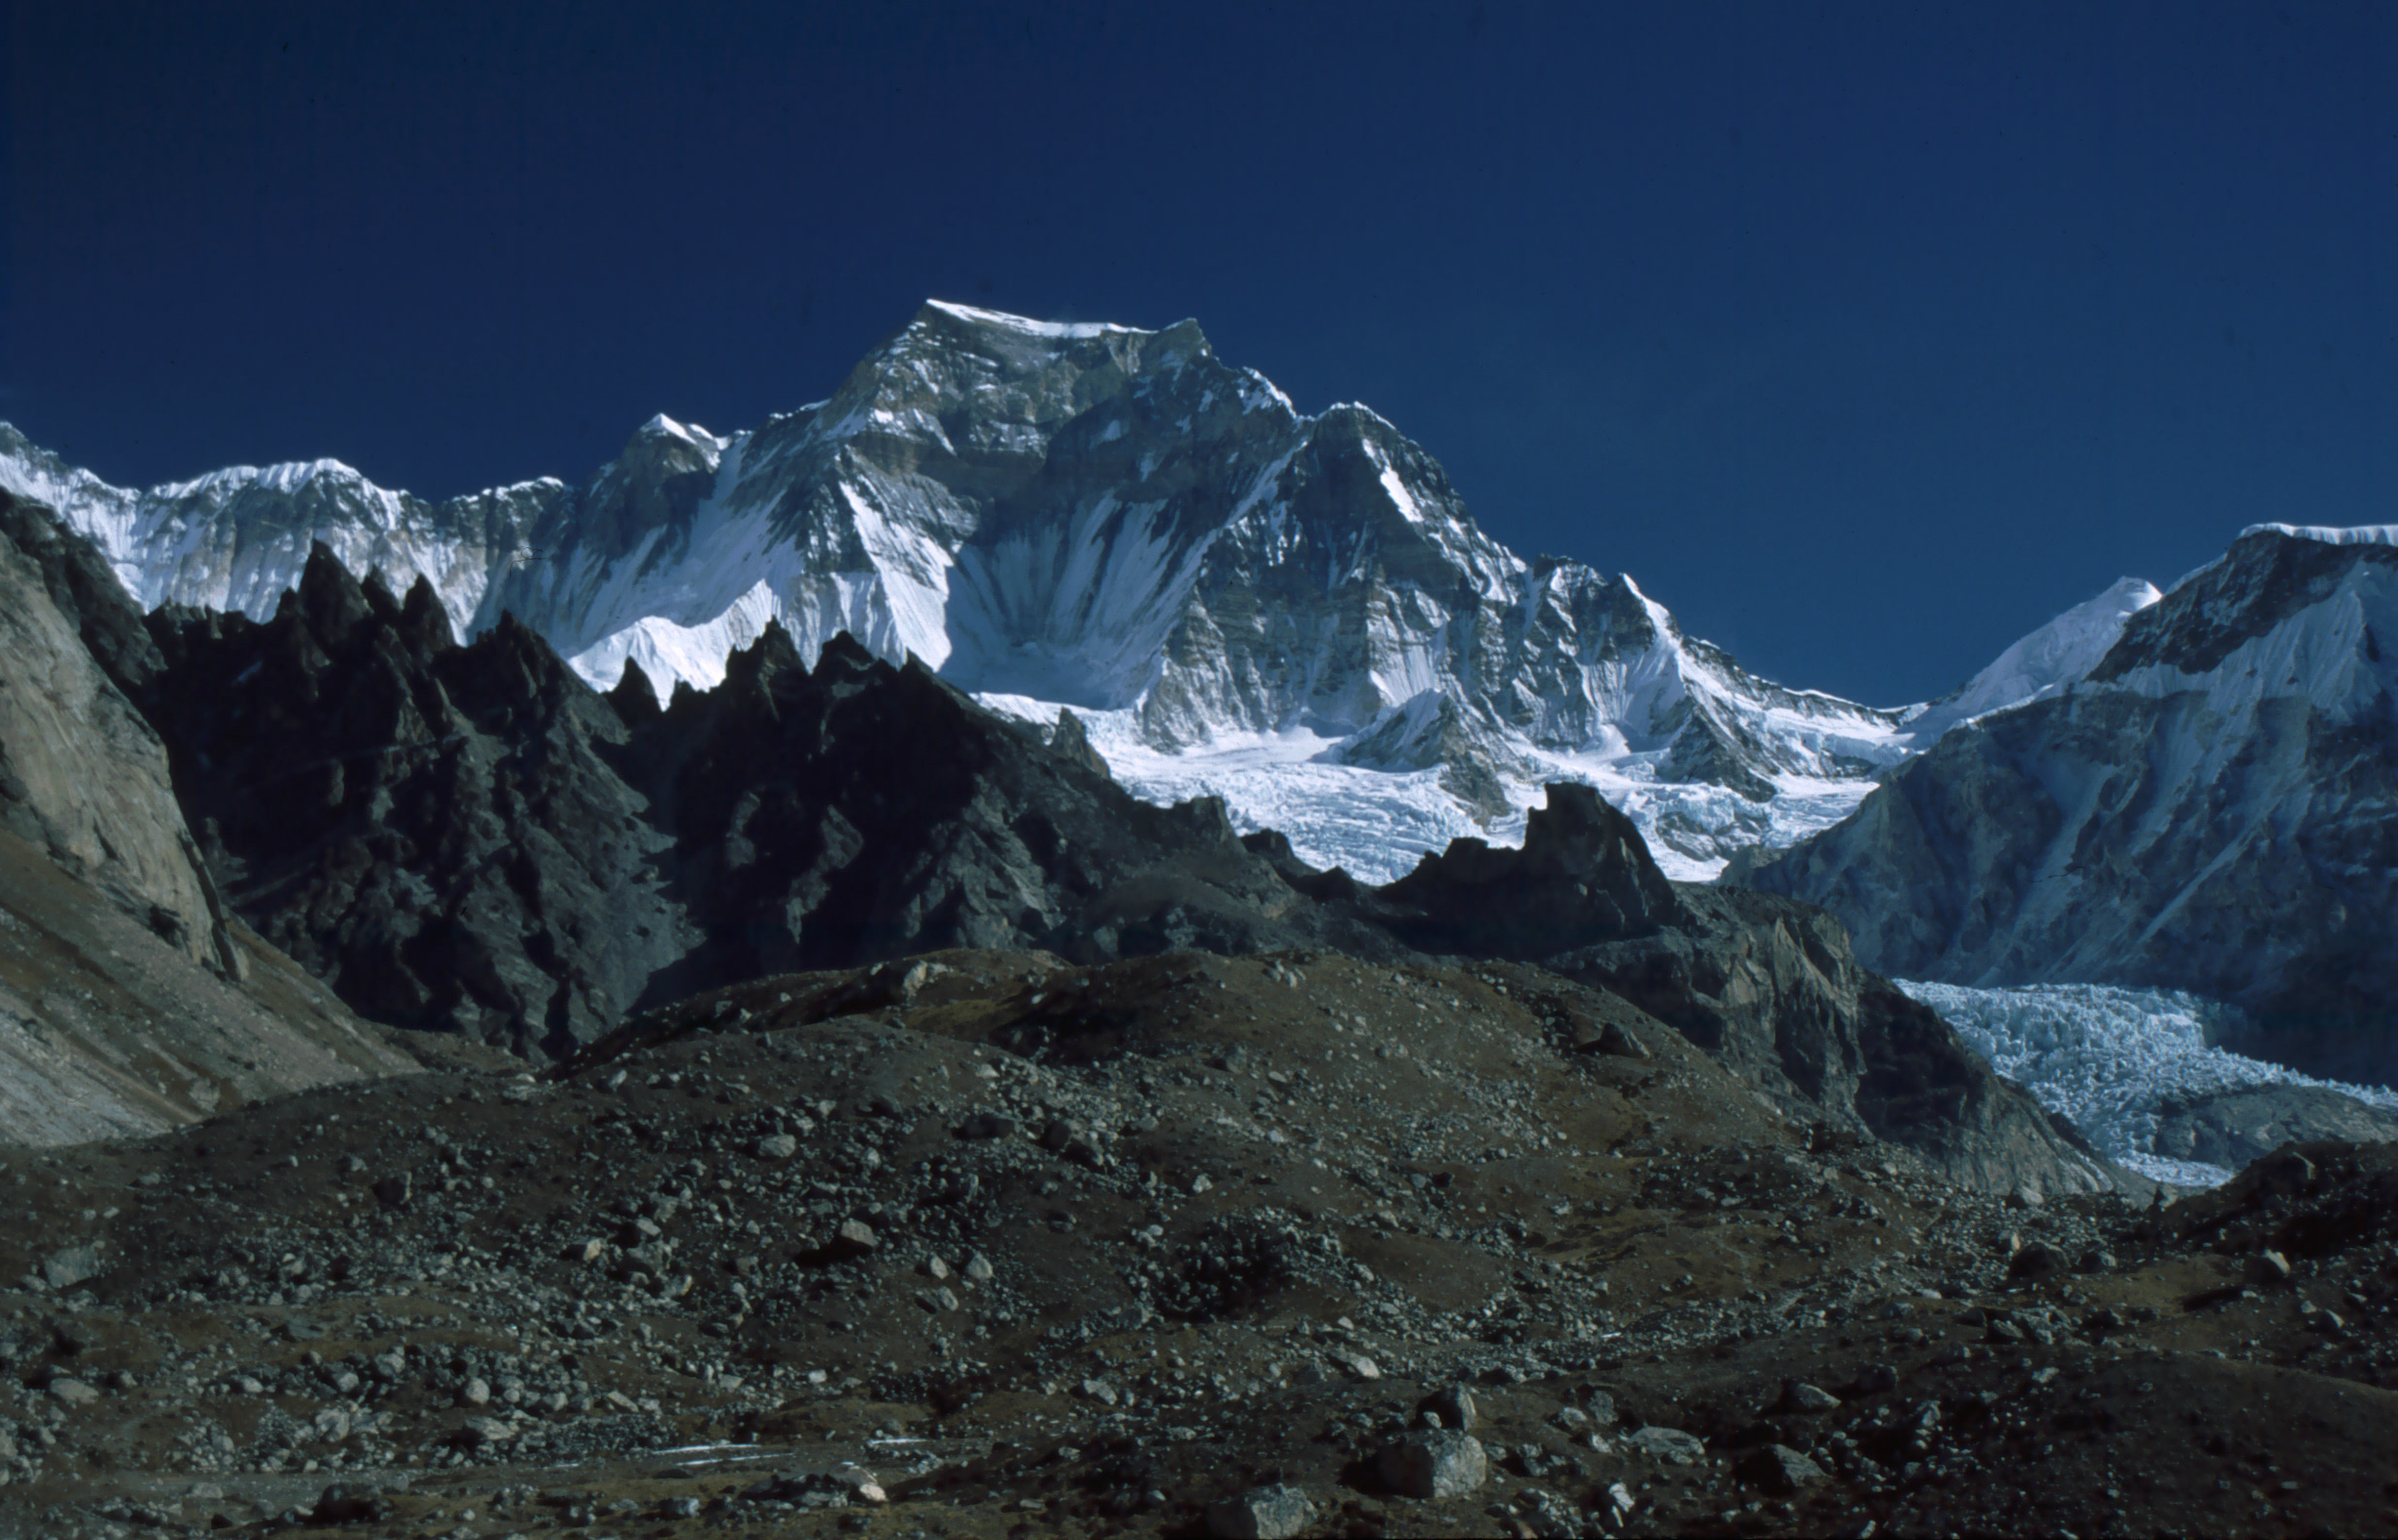 Mt. Gyachung Kang Expedition (7952m)